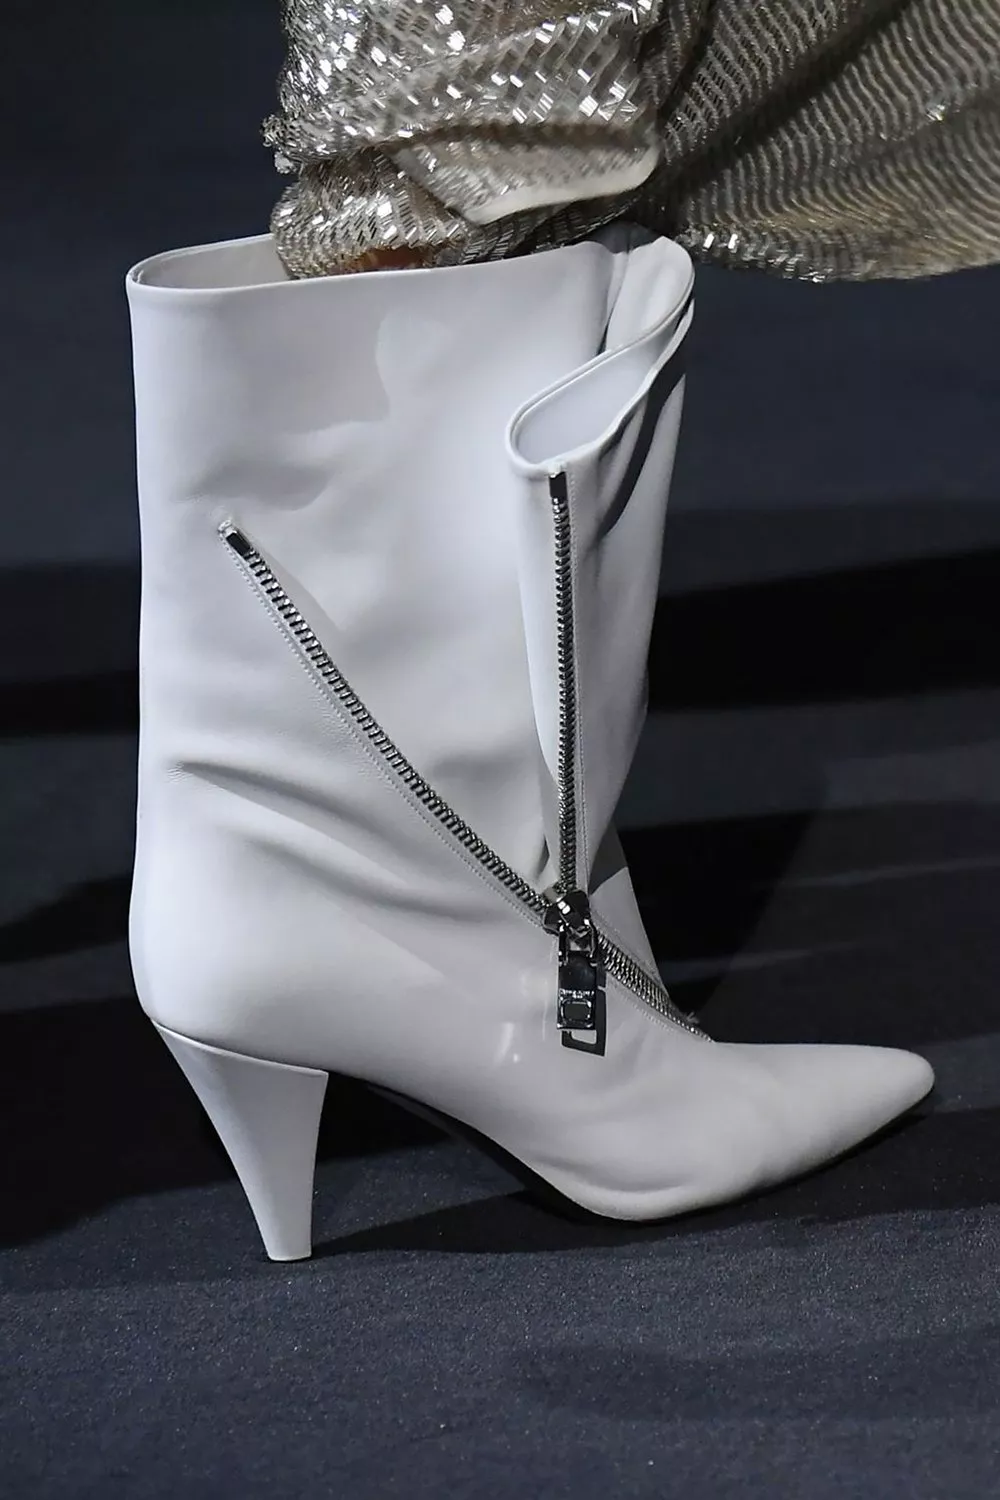 الحذاء الأبيض سيكون حليف إطلالاتكِ بحسب مجموعات خريف 2018